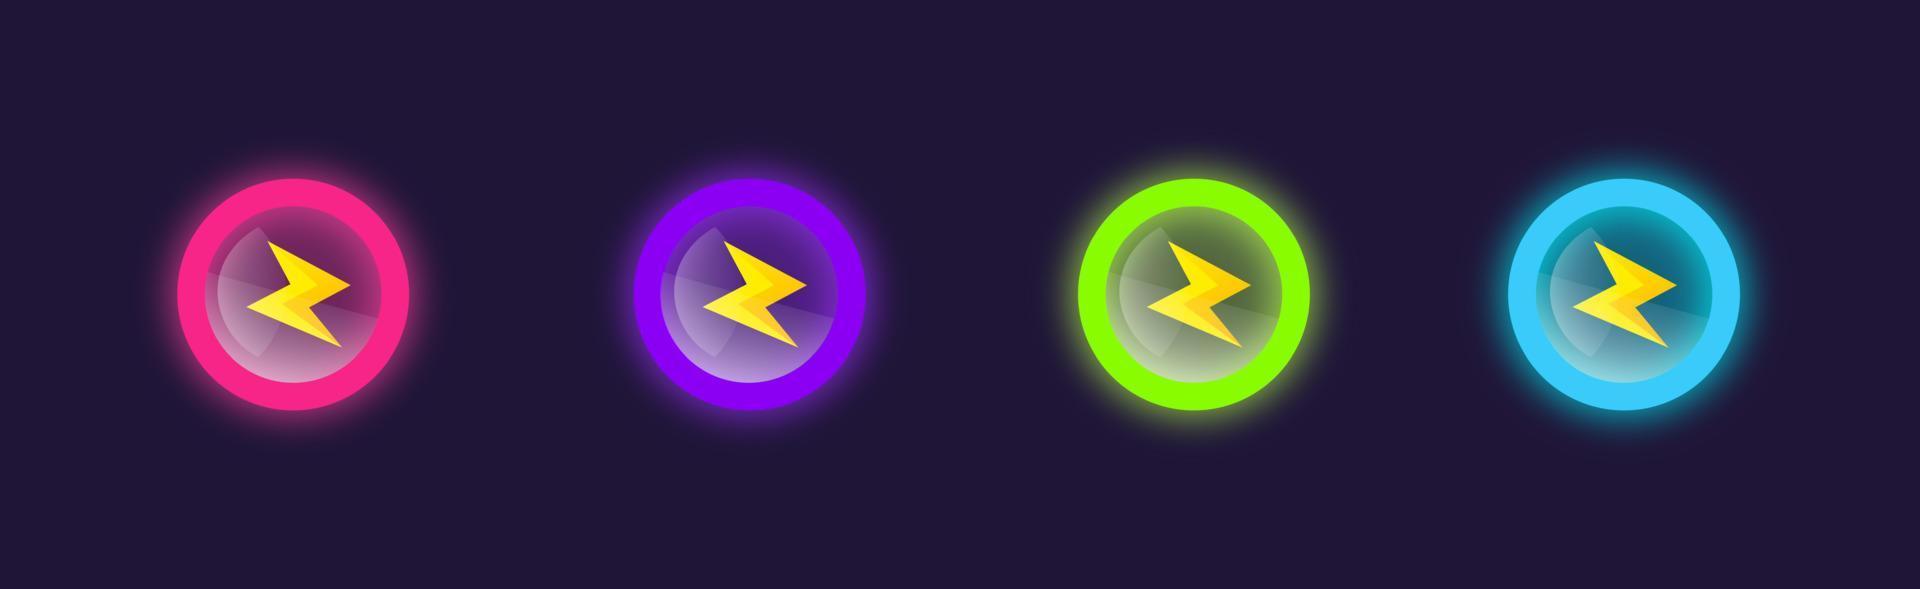 spel ui van energie, uithoudingsvermogen, snelheid, kracht. bliksem pictogrammen badge voor game ui. schildpictogrammen met bliksemschichten. vector